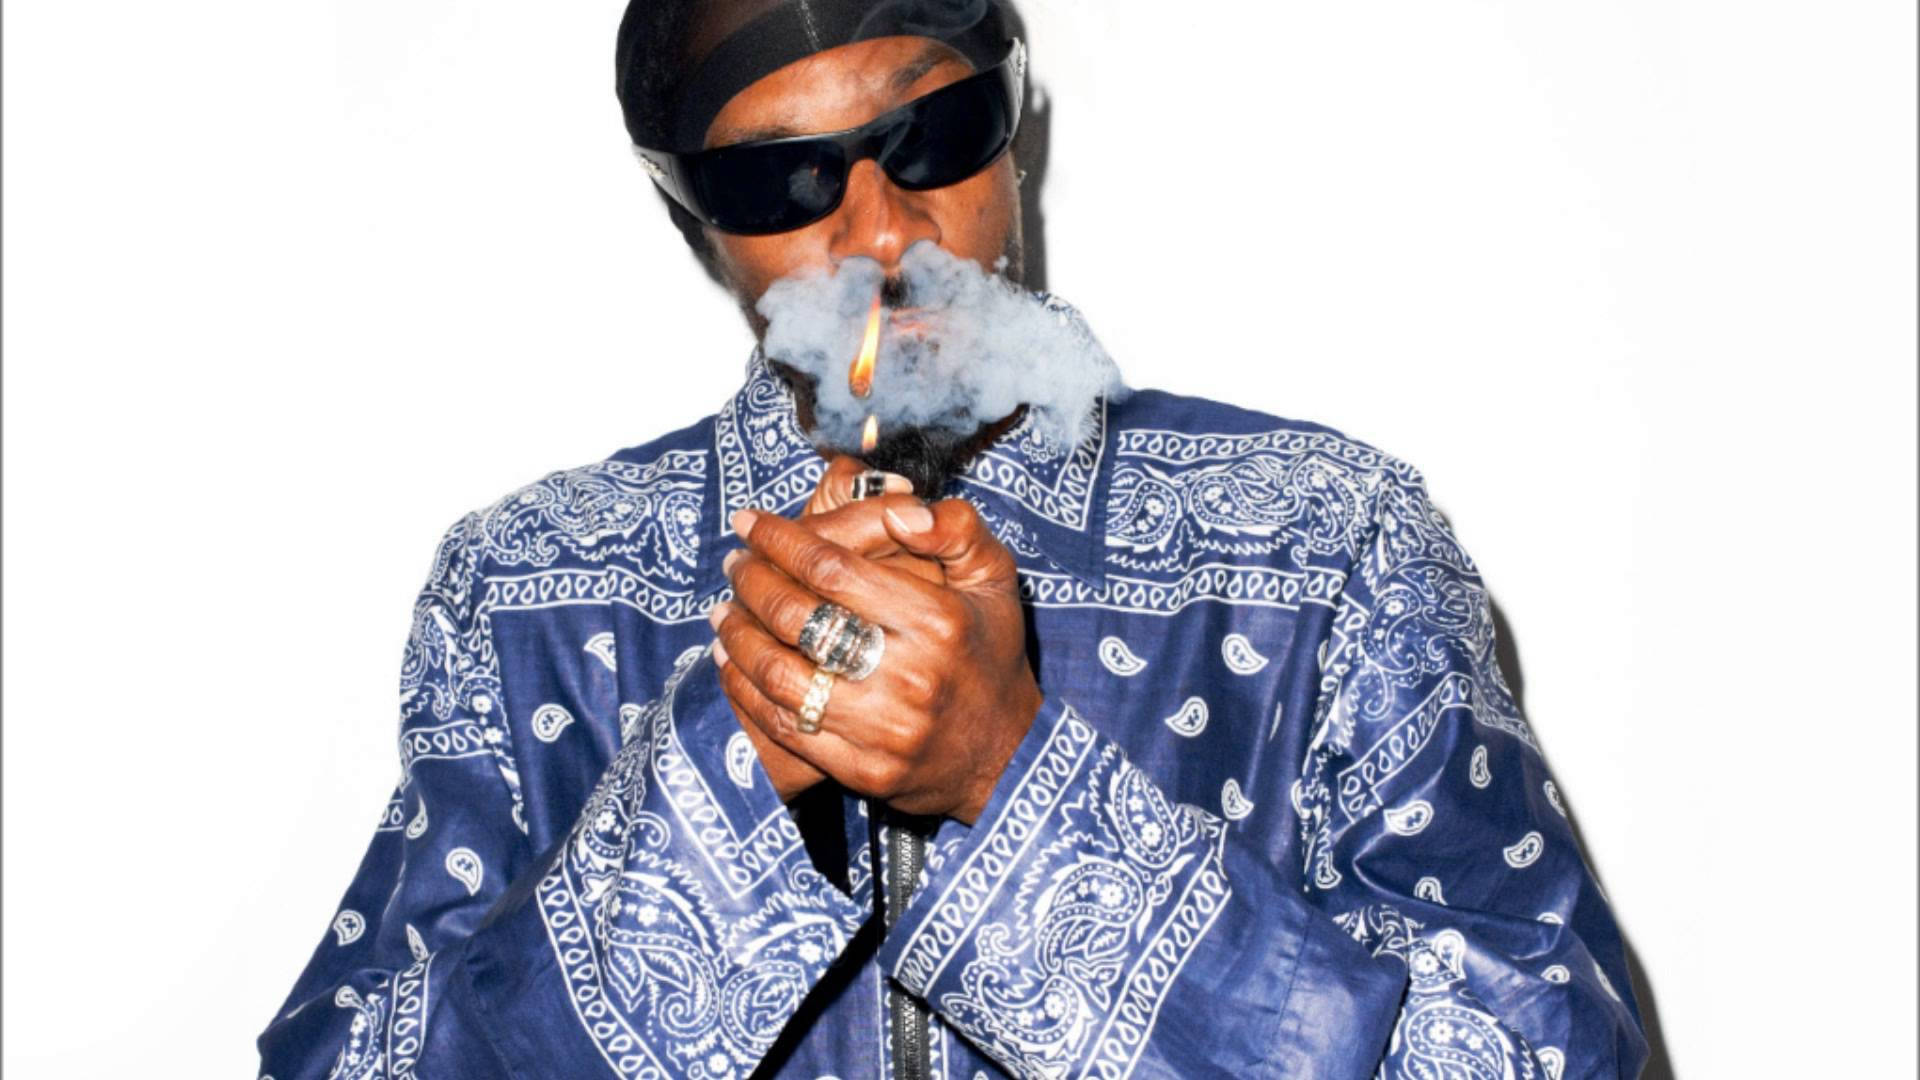 Snoop Dogg Crip Bandana Polo Background